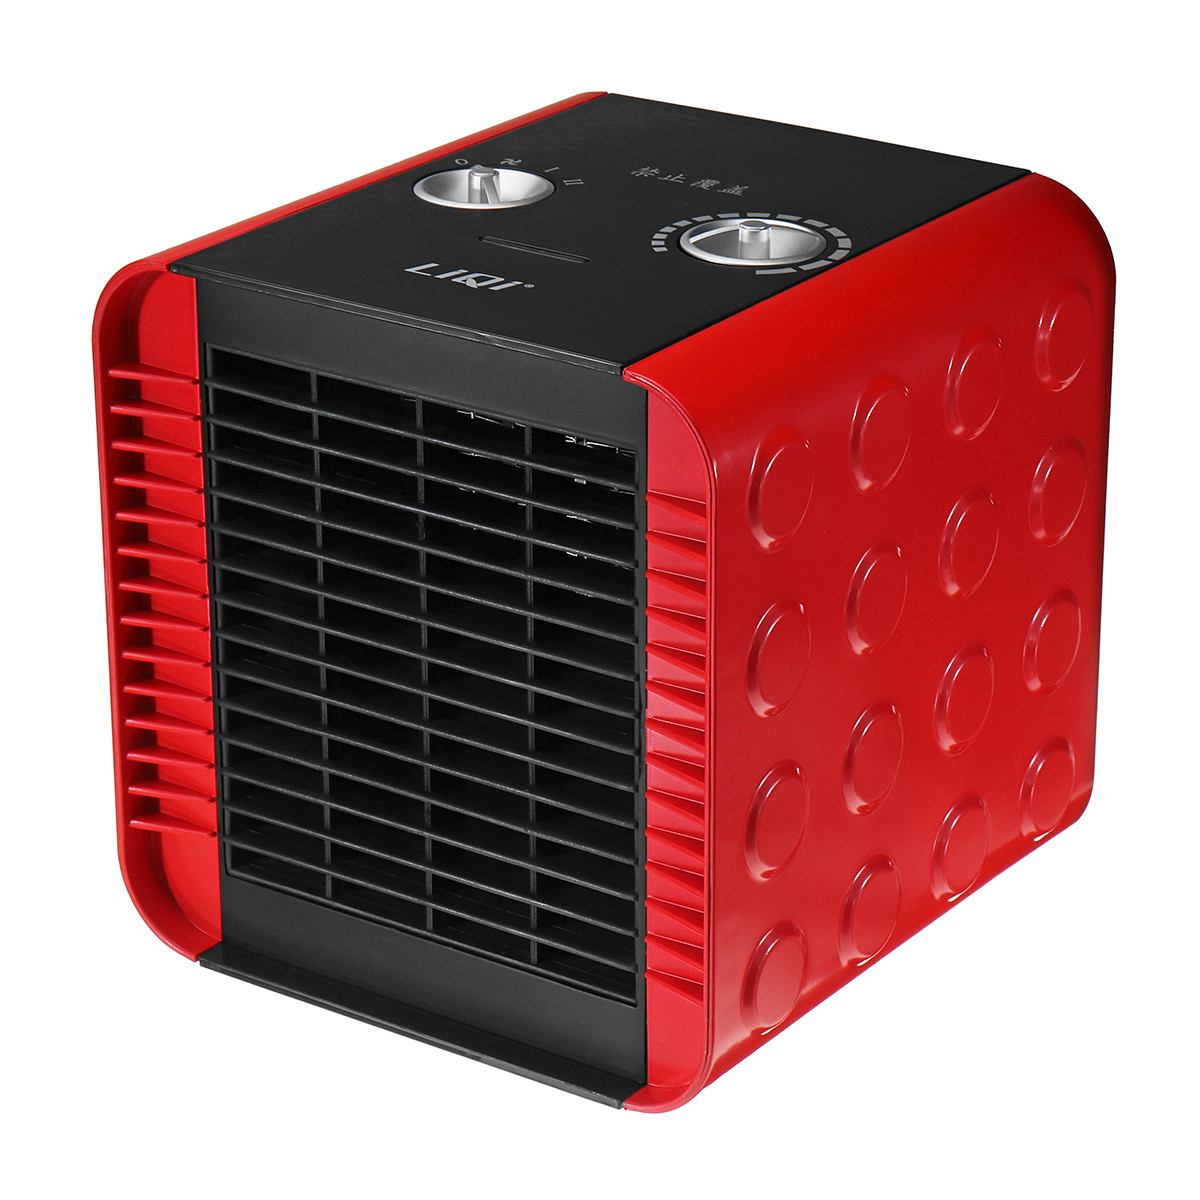 

1500W Adjustable PTC Electric Heater Portable Warm Fan Heater Blower Mini Heating Fan